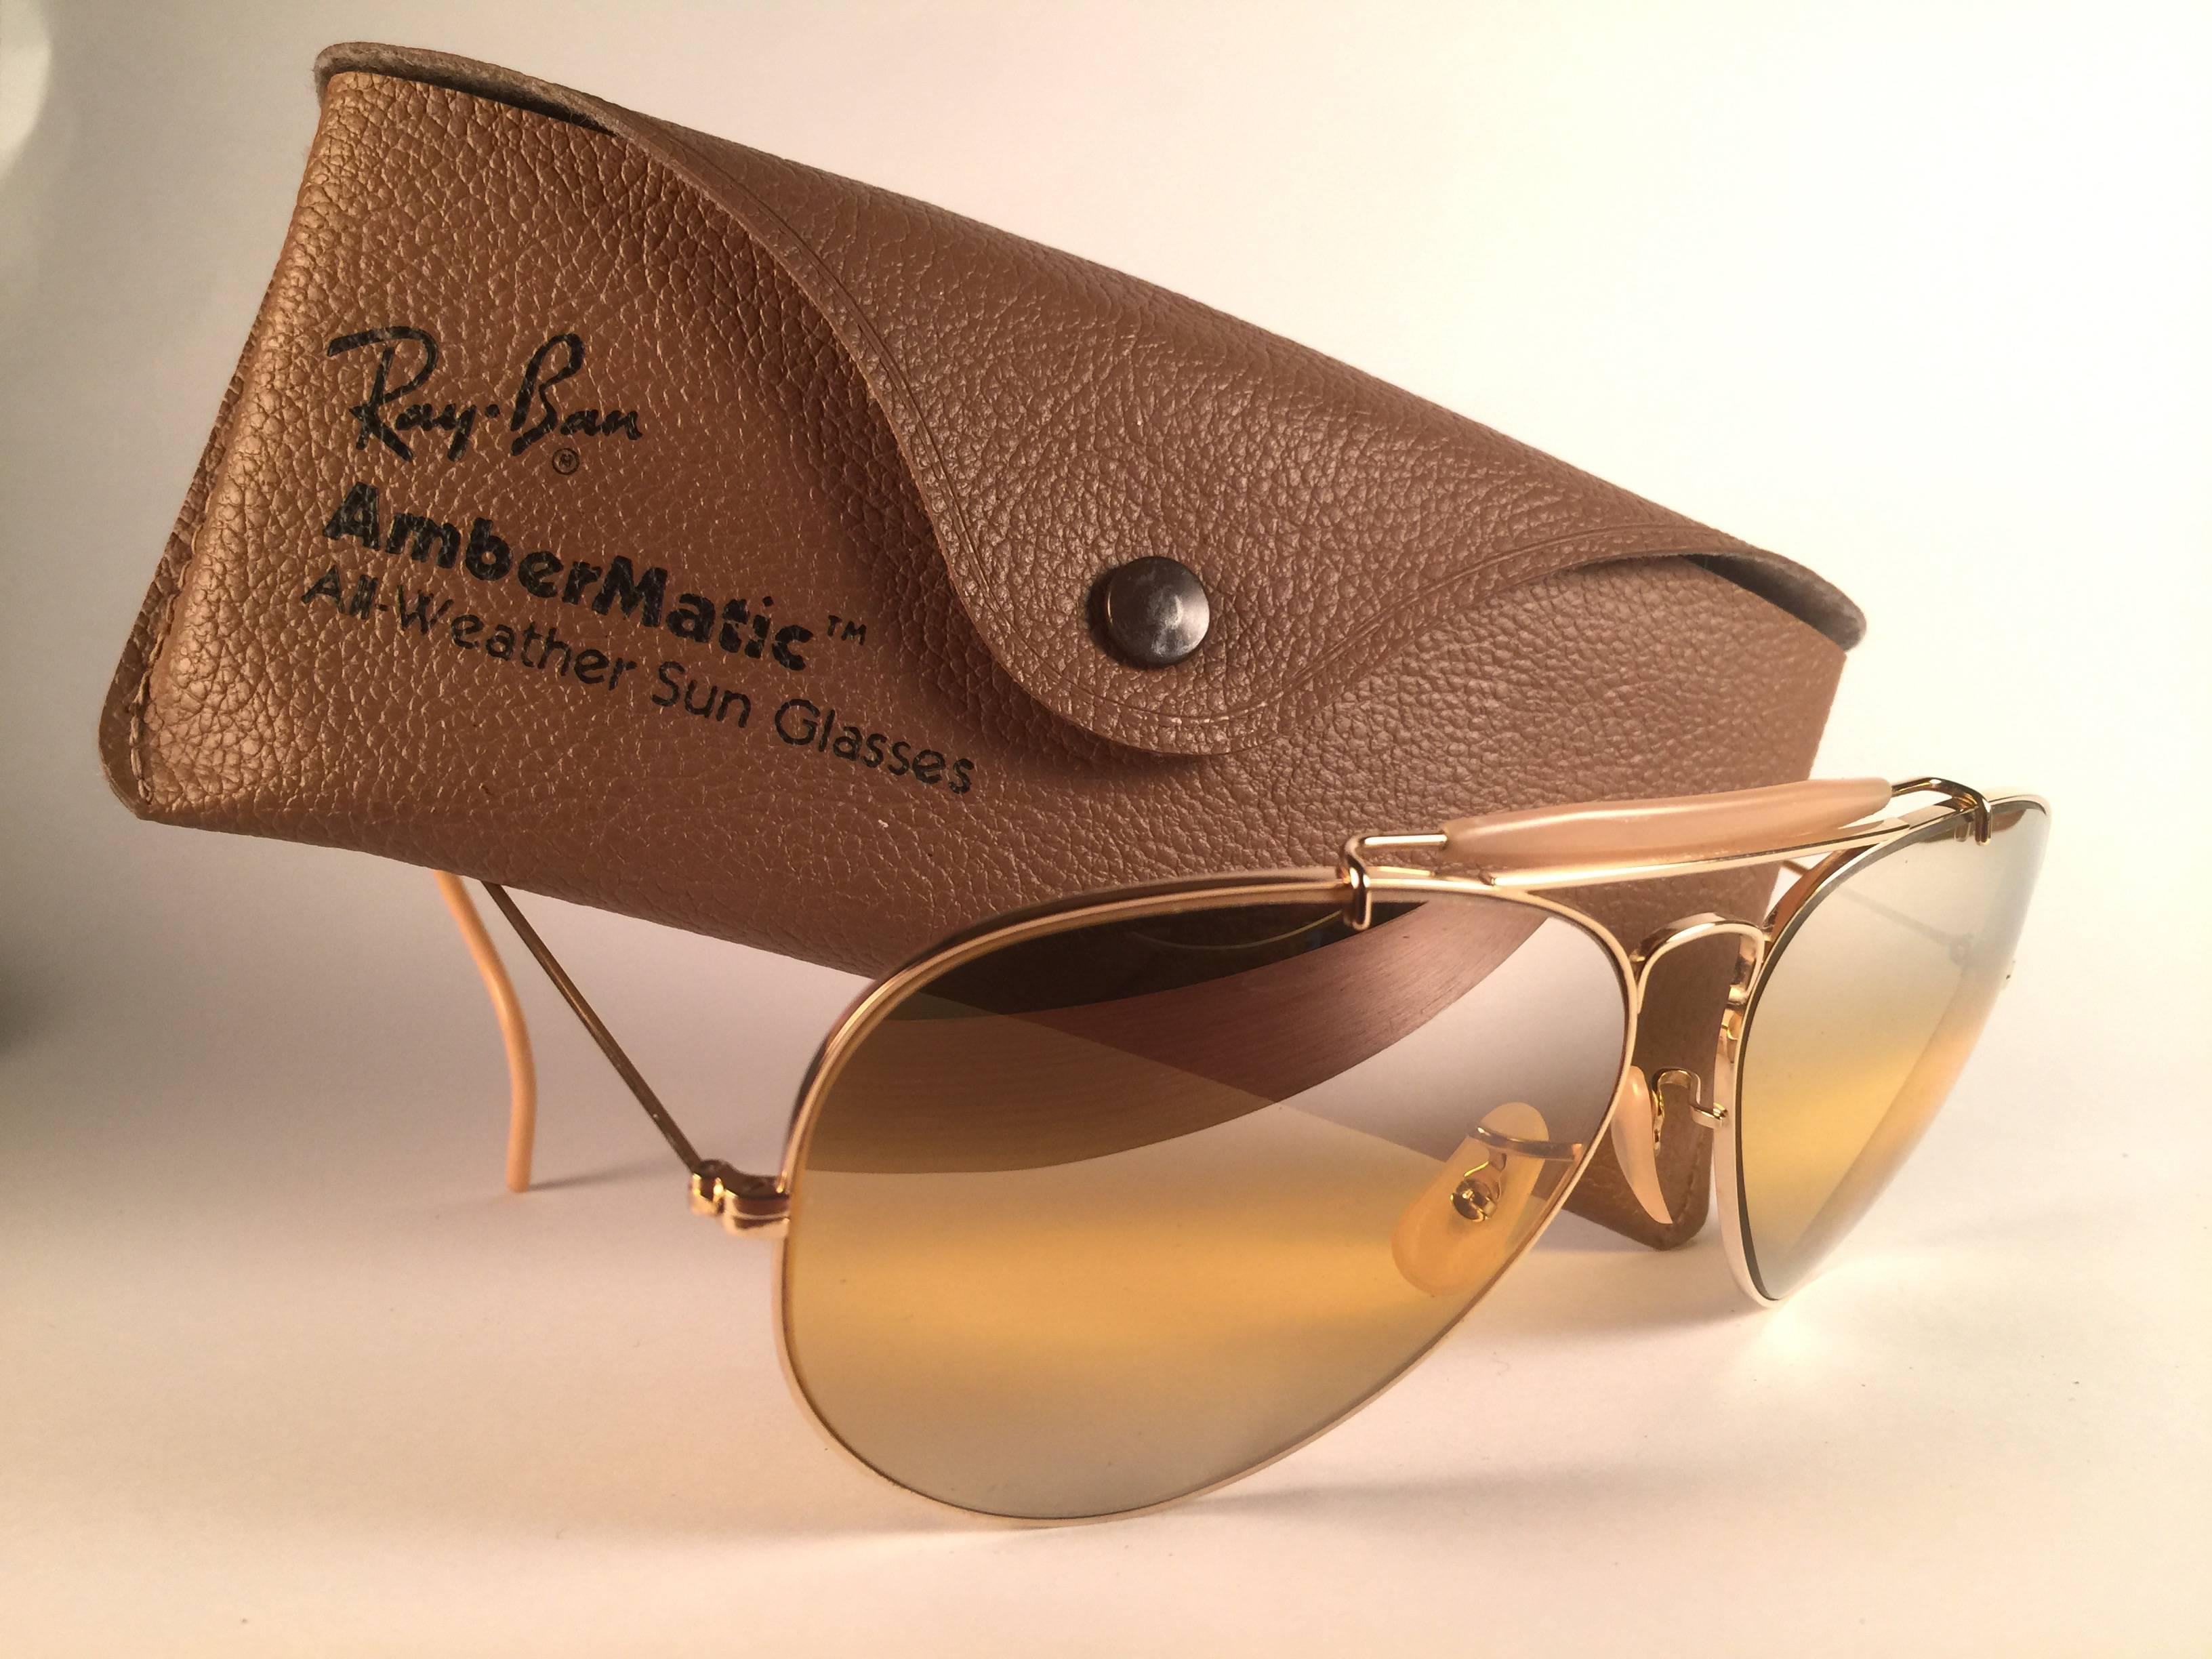 New Vintage Ray Ban Aviator Gold 62mm mit Doppelspiegel Ambermatic Gläser.  B&L ist zweimal in beide Gläser geätzt.  Wird mit dem Original-Etui von Ray Ban B&L geliefert. Bitte beachten Sie, dass dieses Paar aufgrund der fast 40-jährigen Lagerung